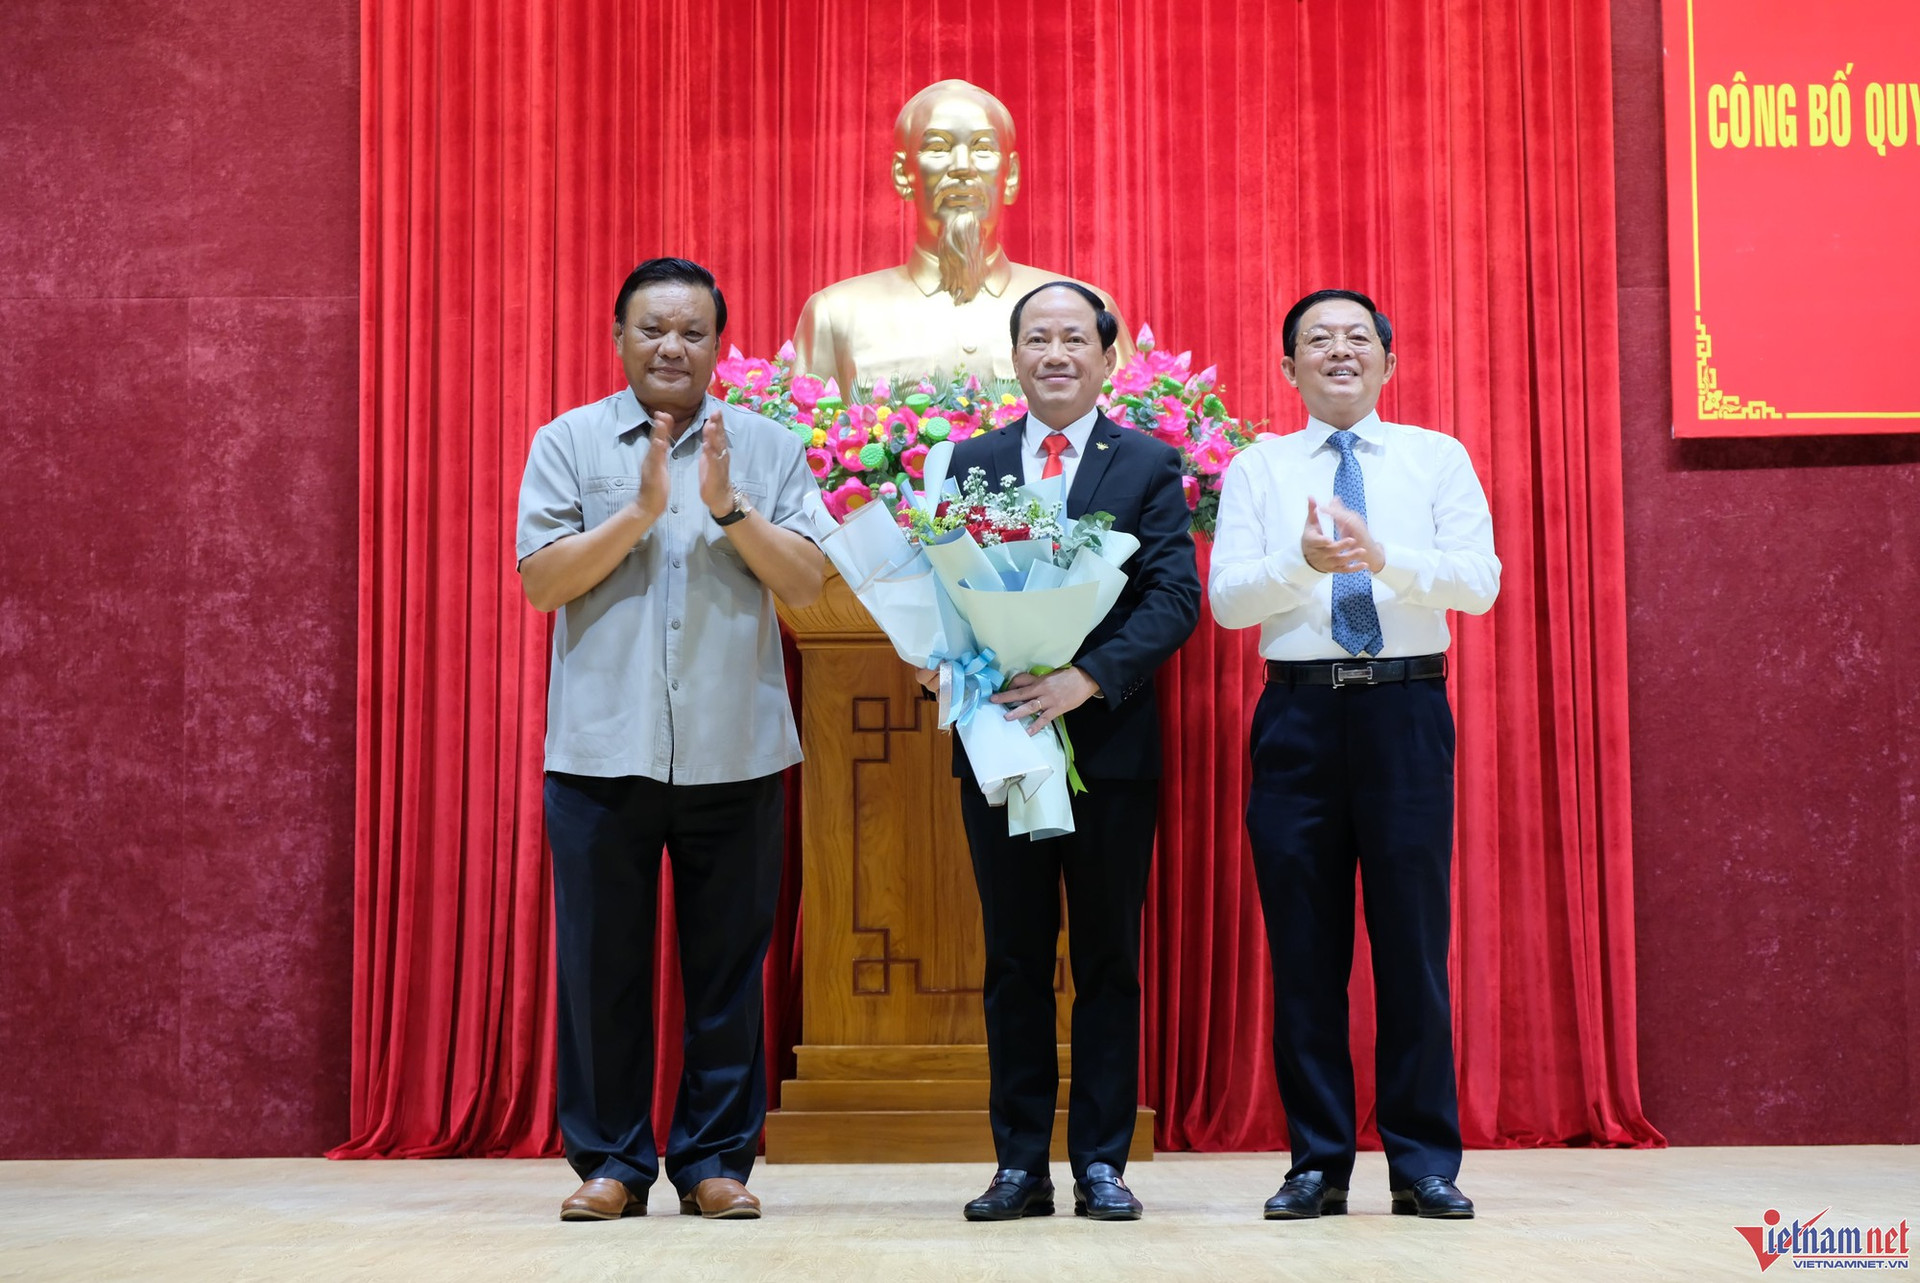 Công bố quyết định điều động ông Phạm Anh Tuấn làm Phó Bí thư Tỉnh ủy Bình Định - Ảnh 2.